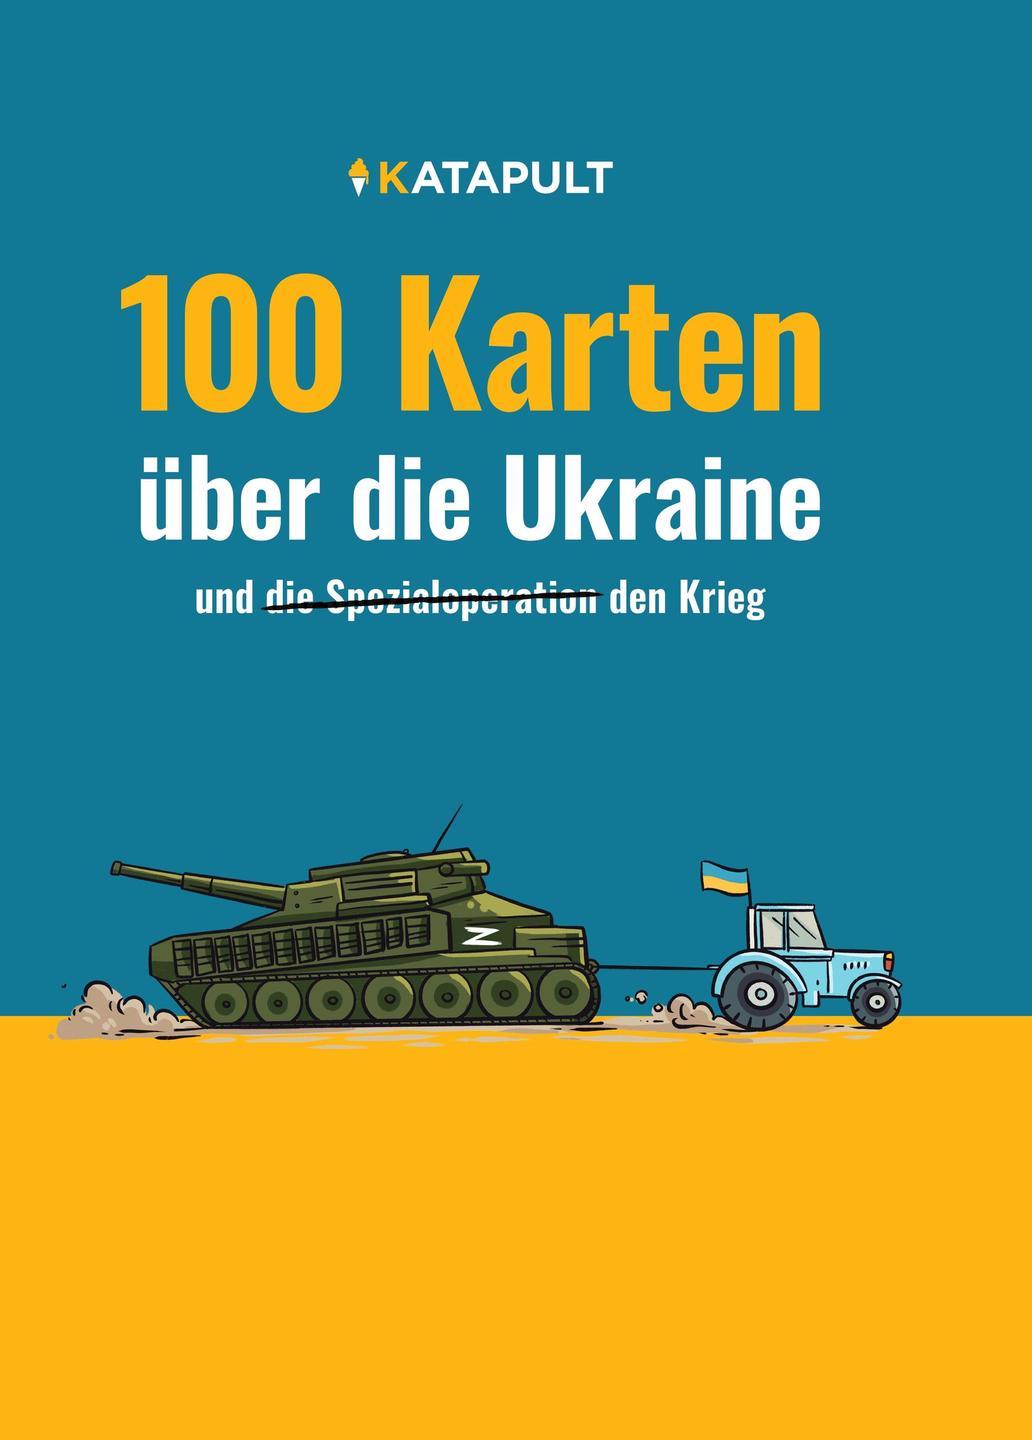 Das Cover von "100 Karten über die Ukraine" von Katapult. Es zeigt einen Traktor, der einen Panzer am Abschleppseil zieht.